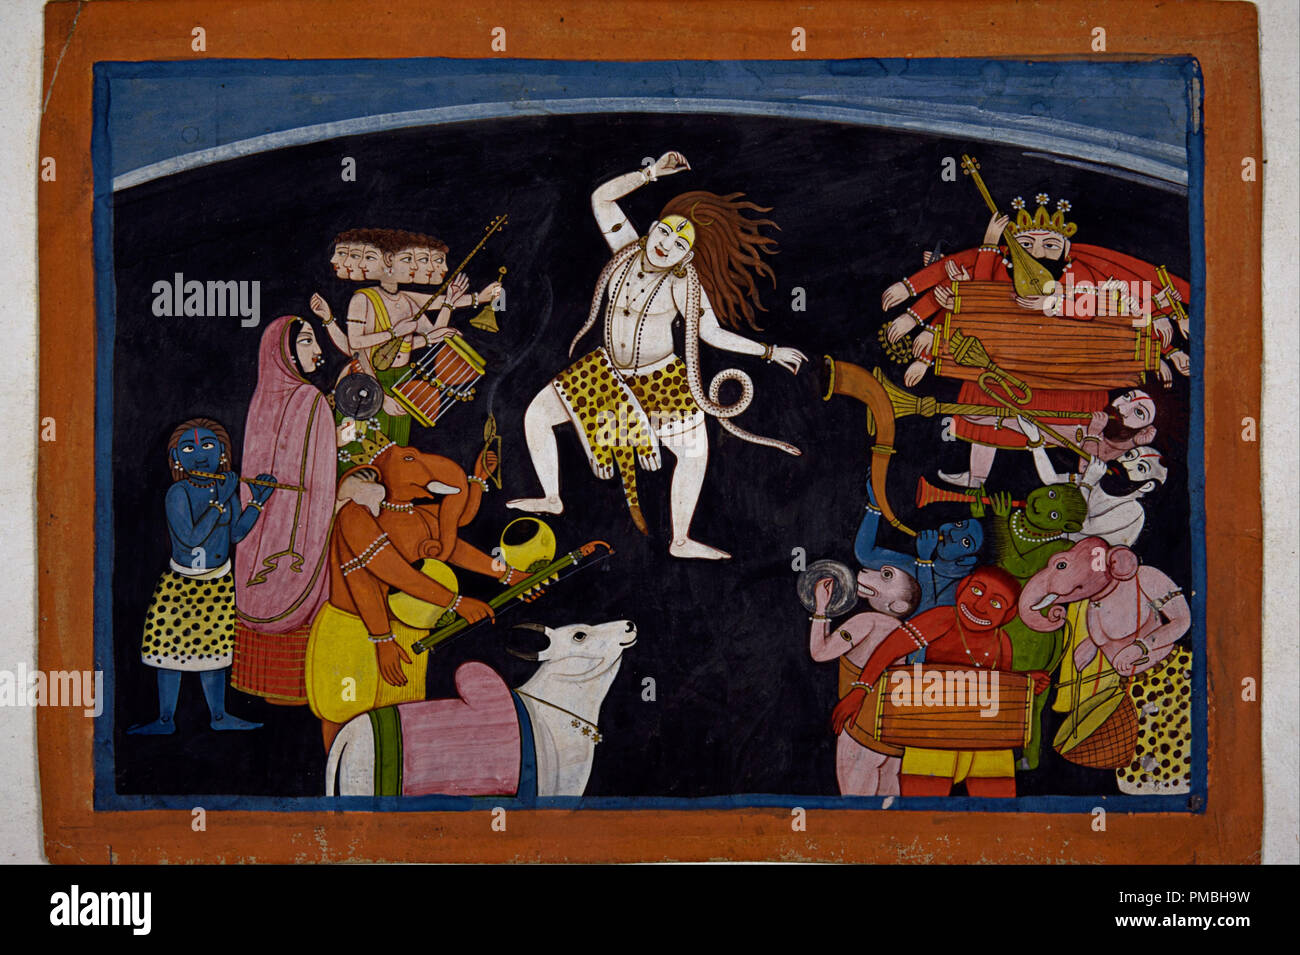 Signore Shiva ballando. Data/Periodo: 1700 - 1800. La pittura. Altezza: 287 mm (11.29 in); larghezza: 207 mm (8.14 in). Autore: Sconosciuto. Foto Stock